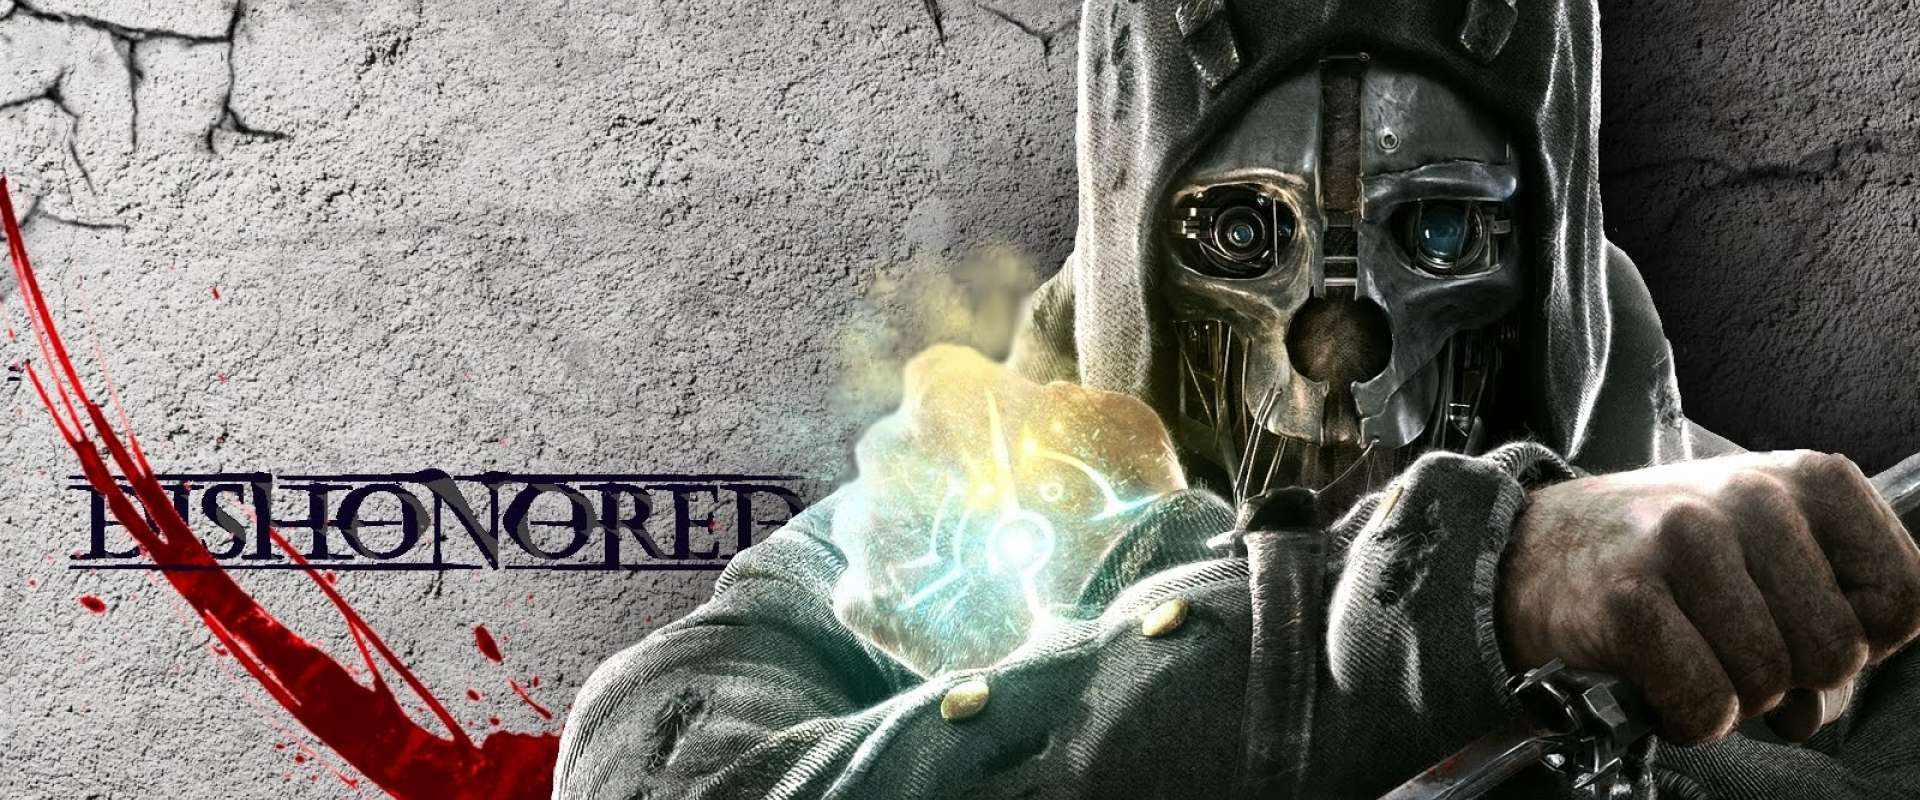 Os códigos dos cofres - Dishonored - Tribo Gamer